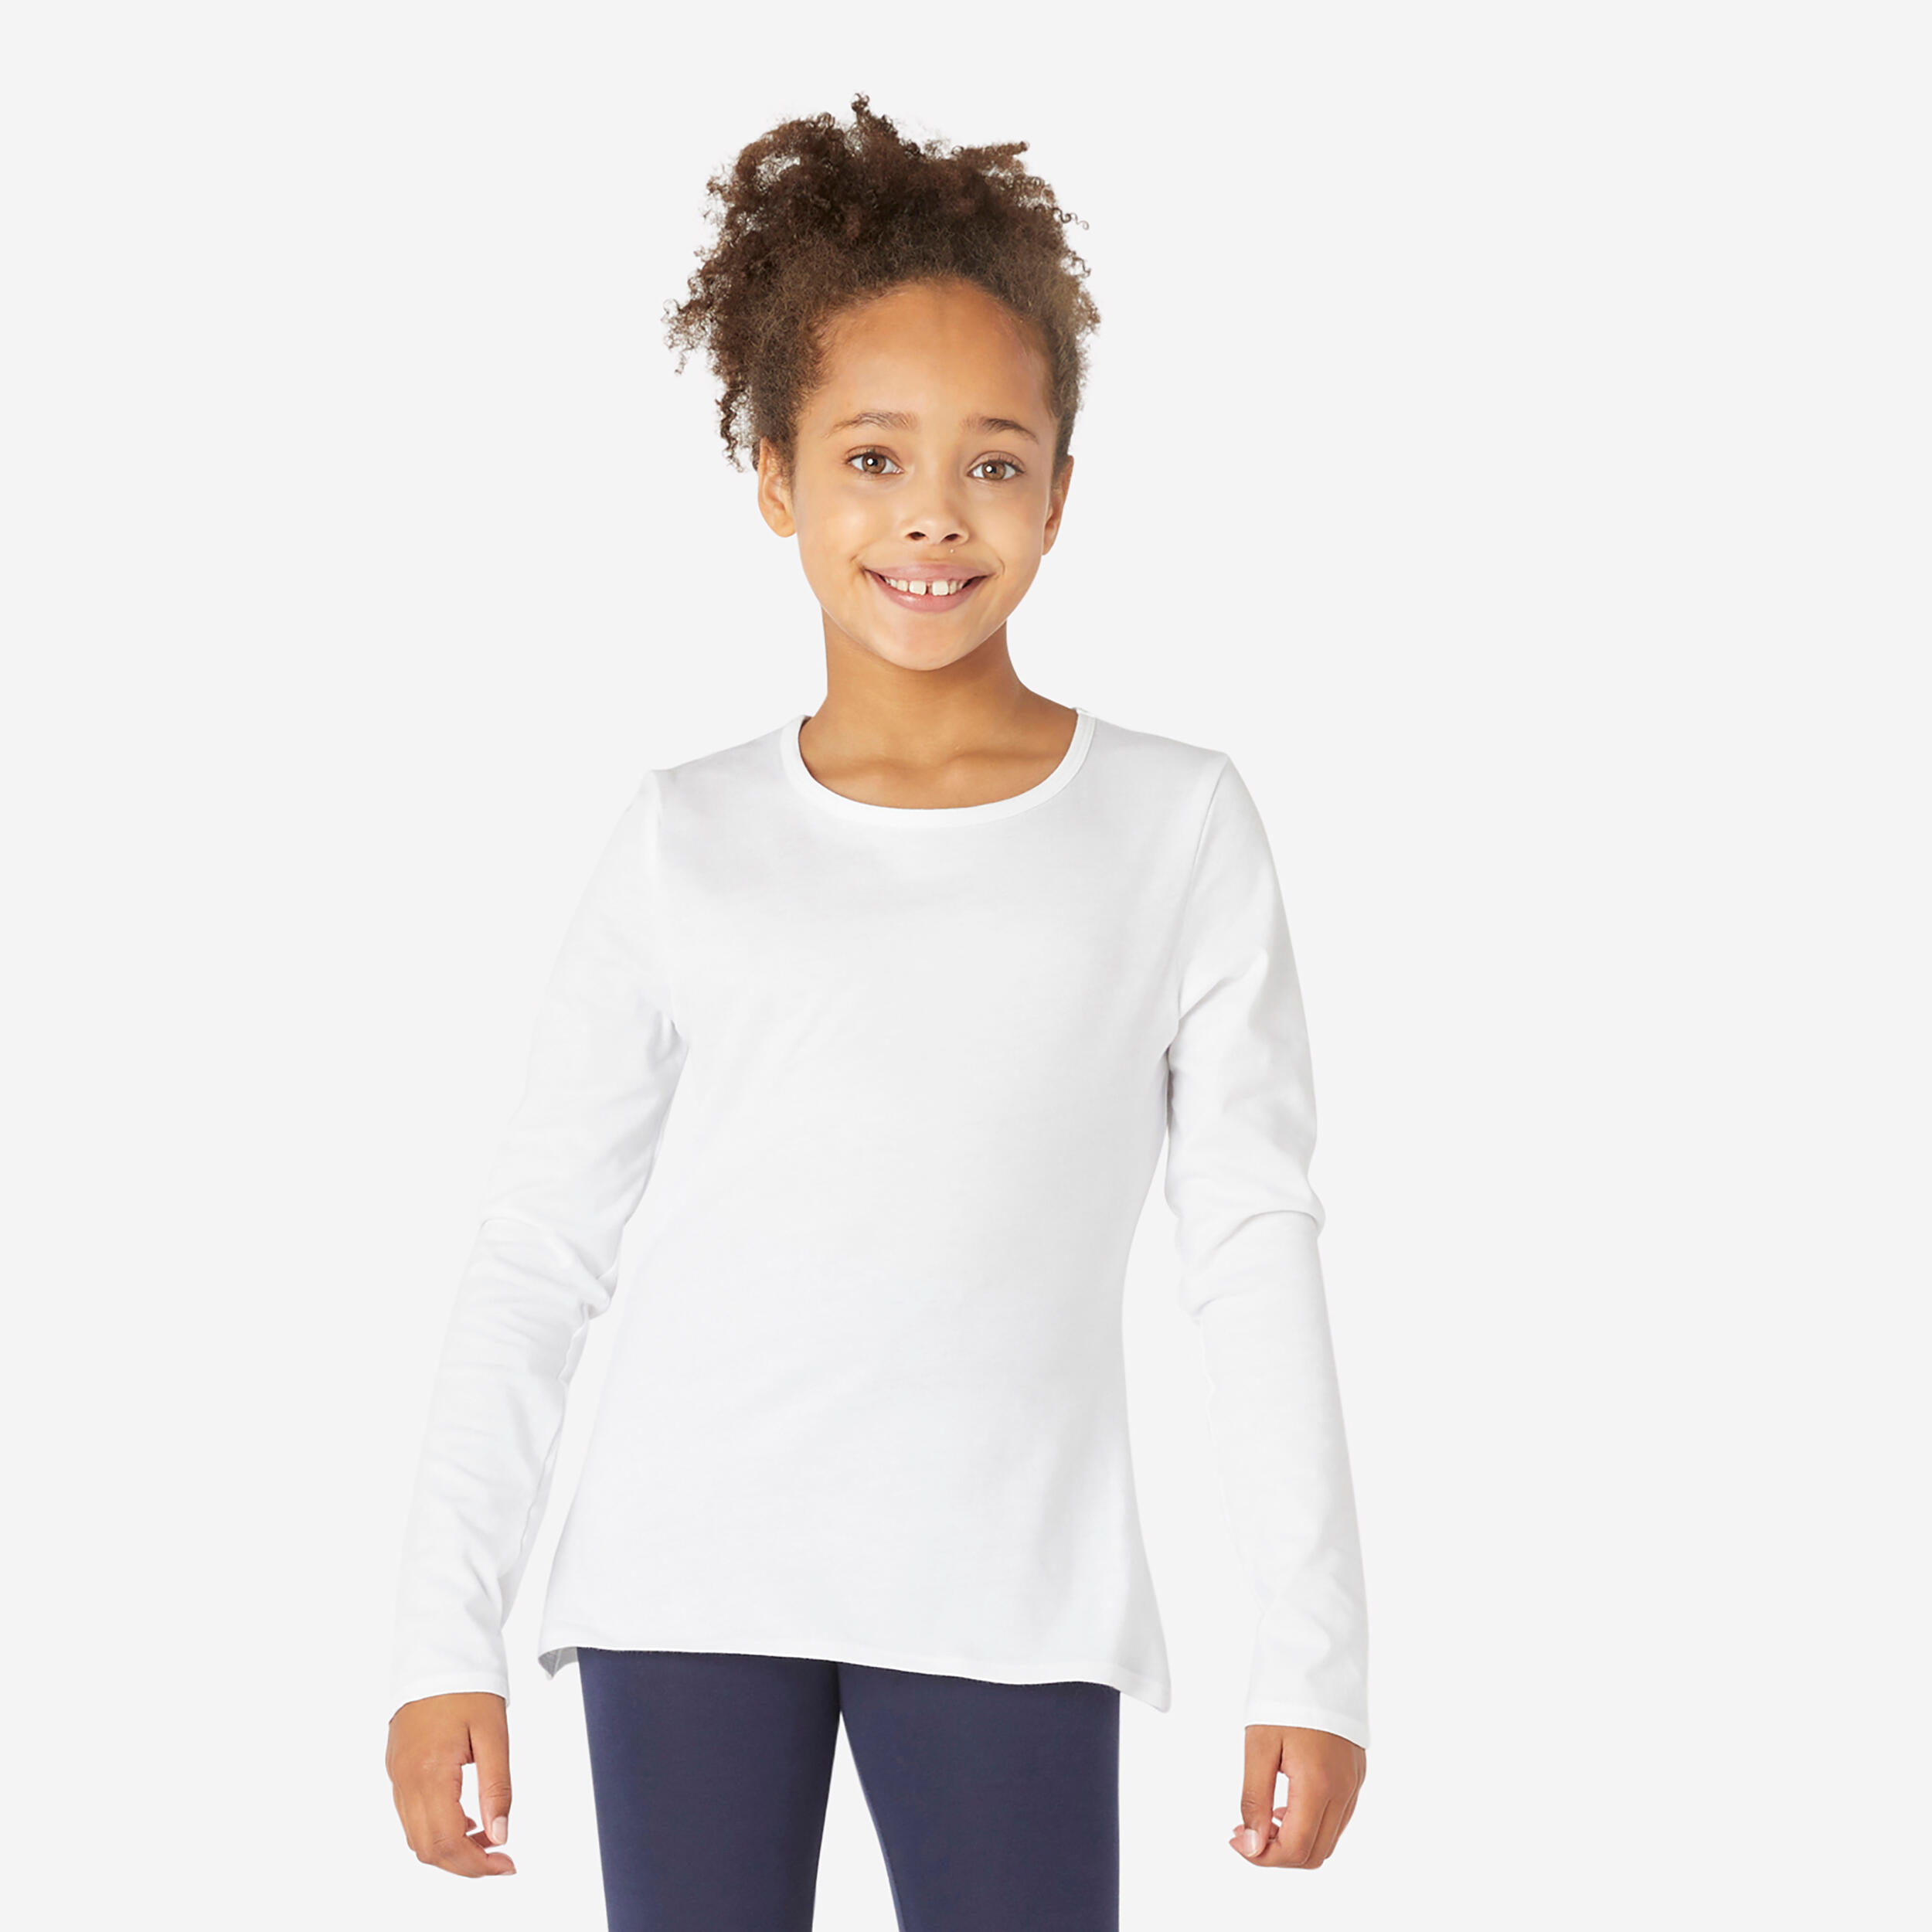 Kids' Basic Long-Sleeved Cotton T-Shirt - White 4/4